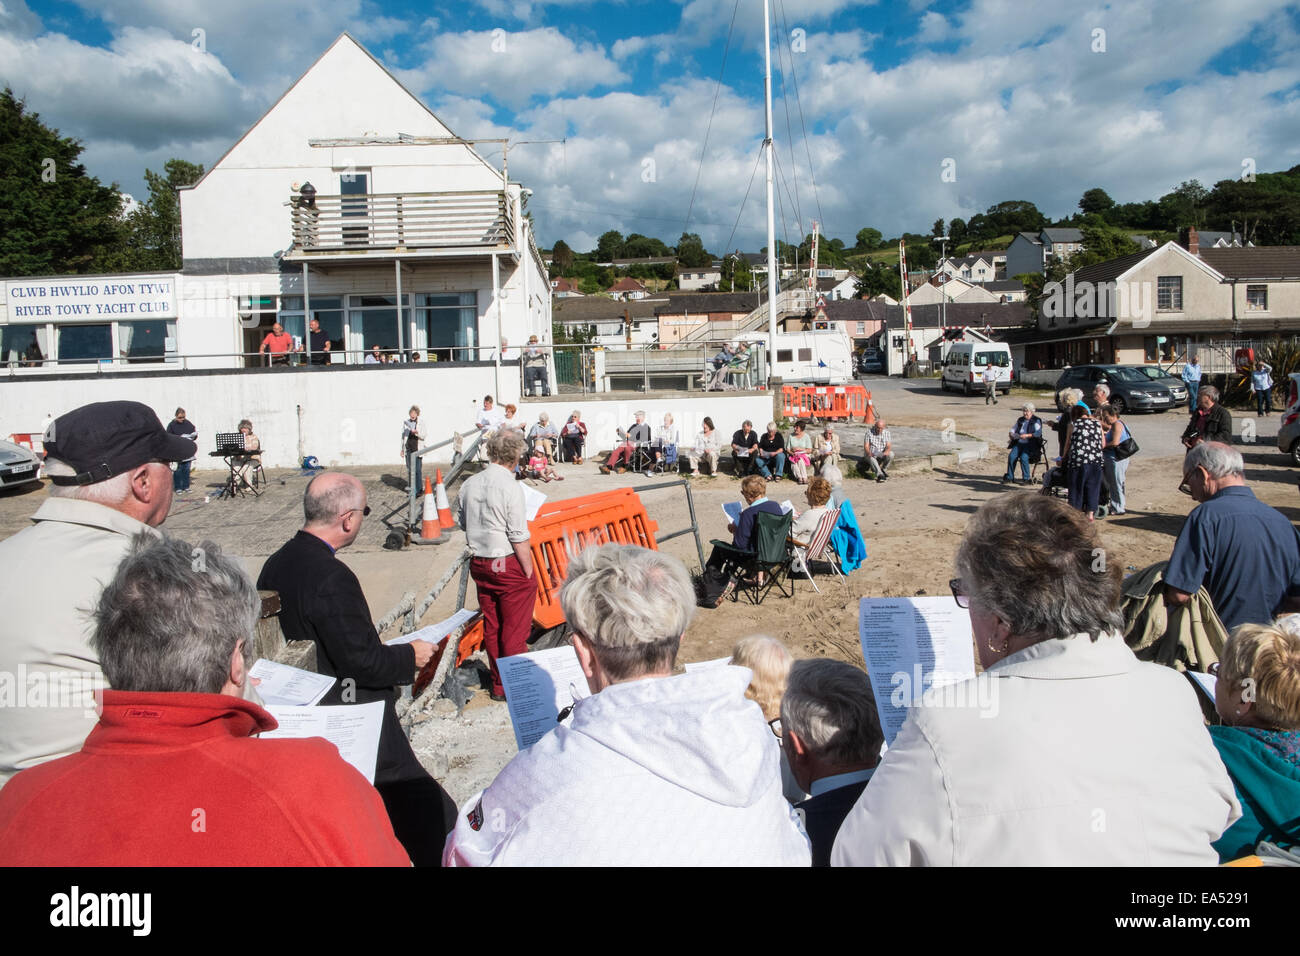 Inni sulla spiaggia.La chiesa cristiana di go-ers approfittare del clima soleggiato cantare canzoni religiose all'aperto,all'aperto,a Ferryside,West Wales, Wales, Regno Unito Foto Stock